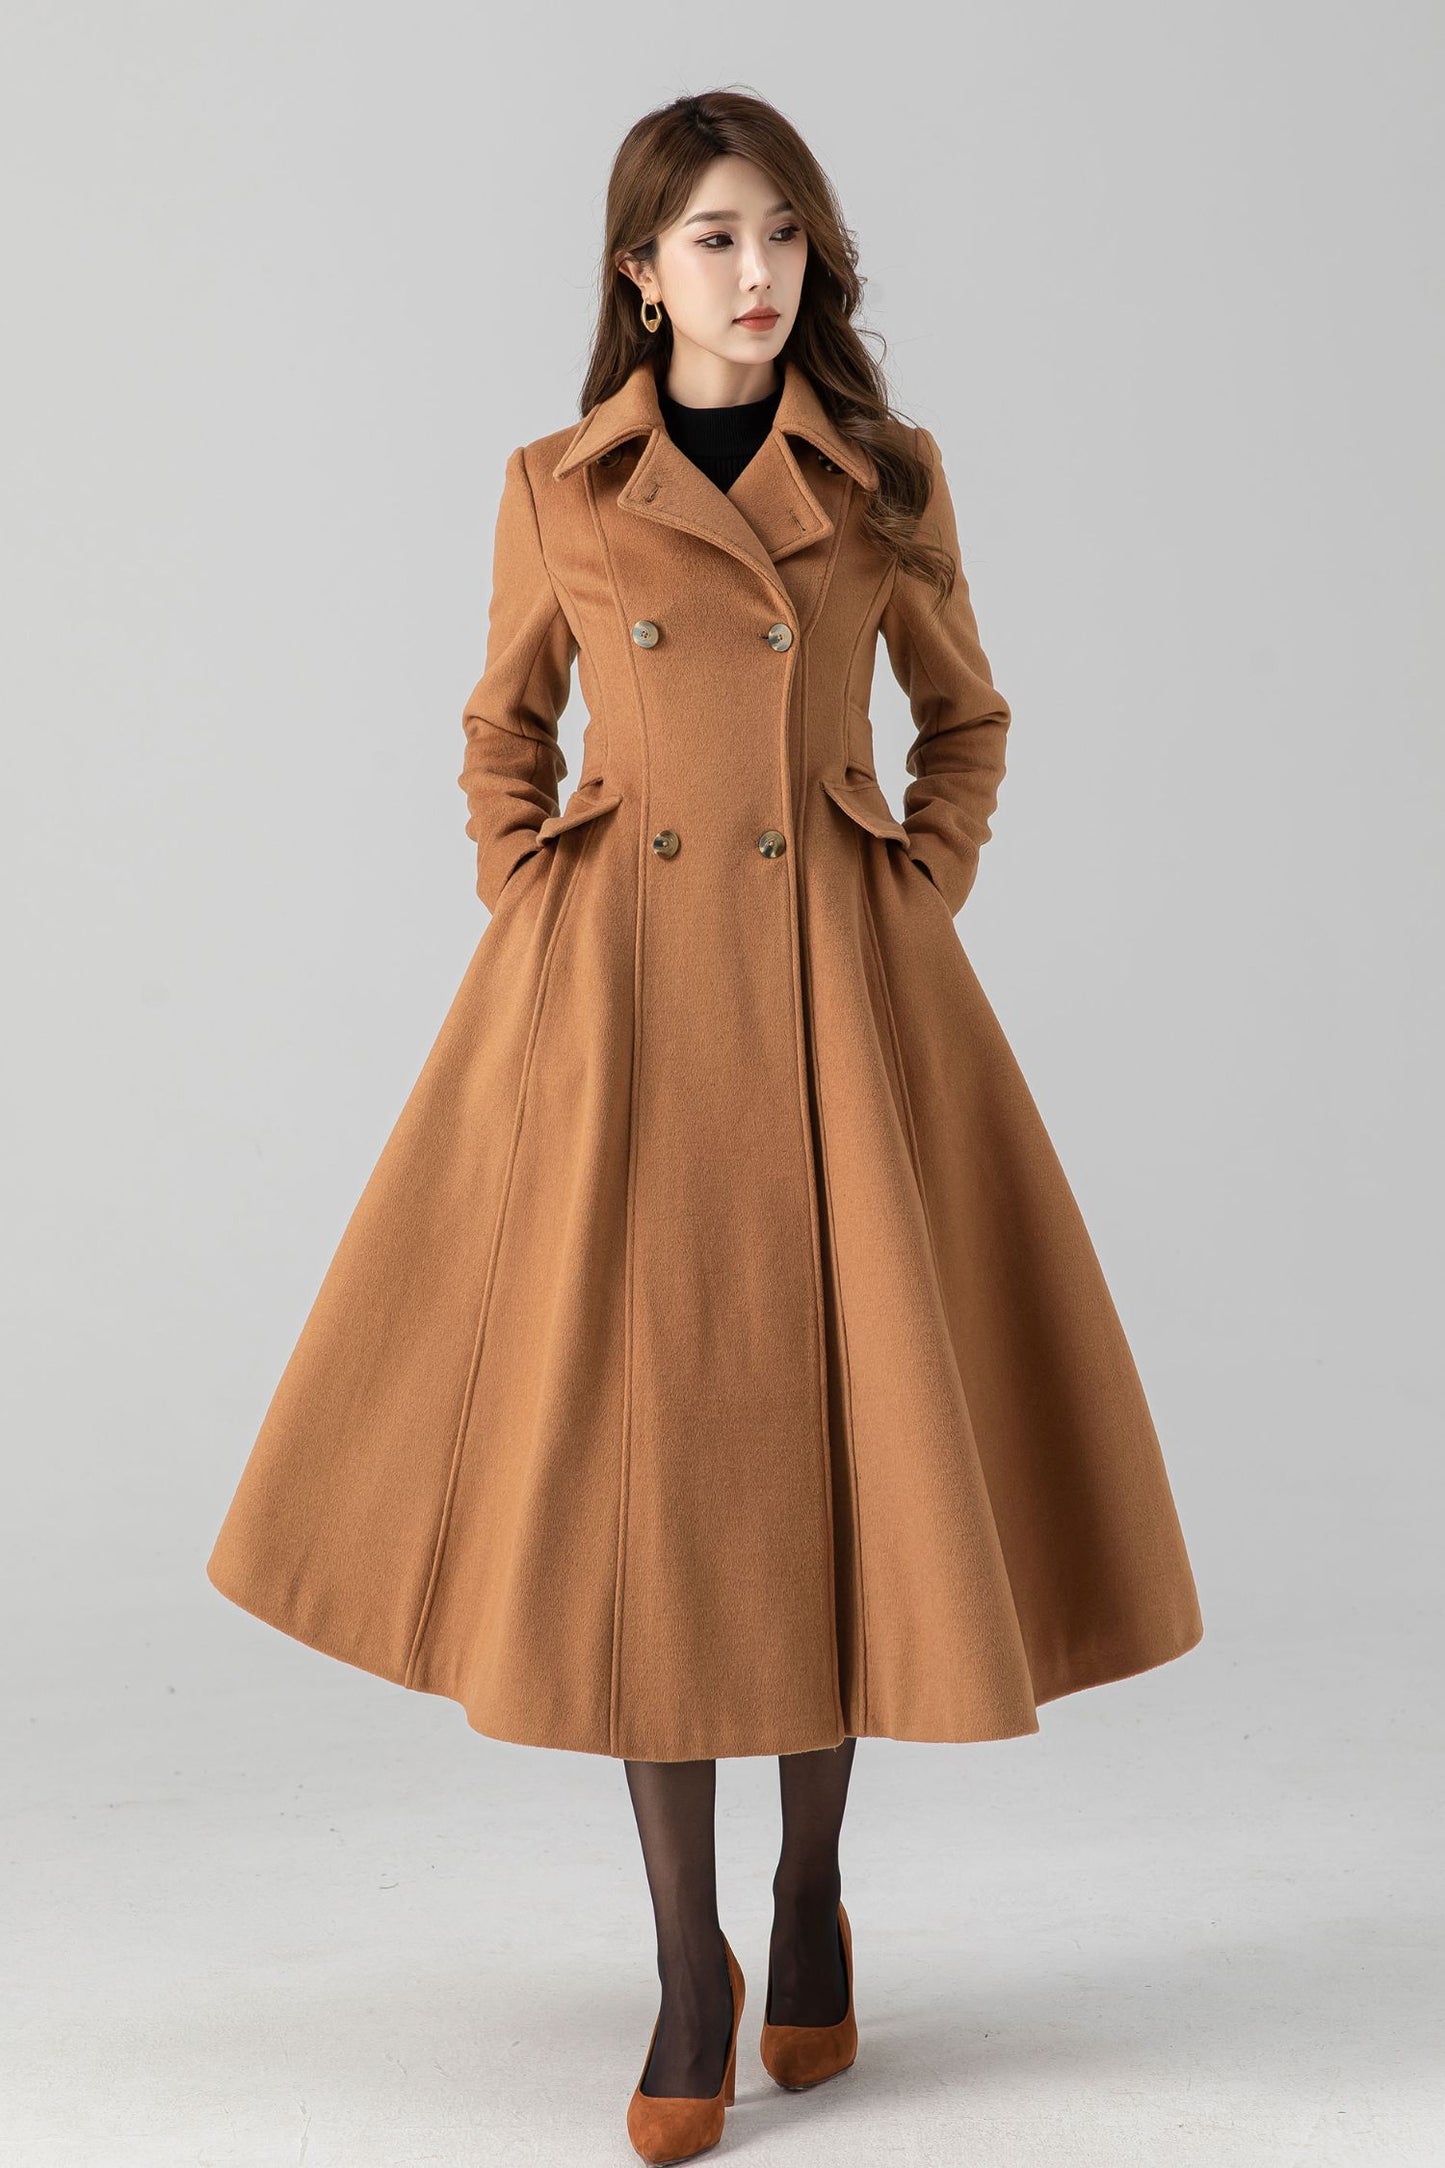 Vintage inspired winter long wool coat 4668